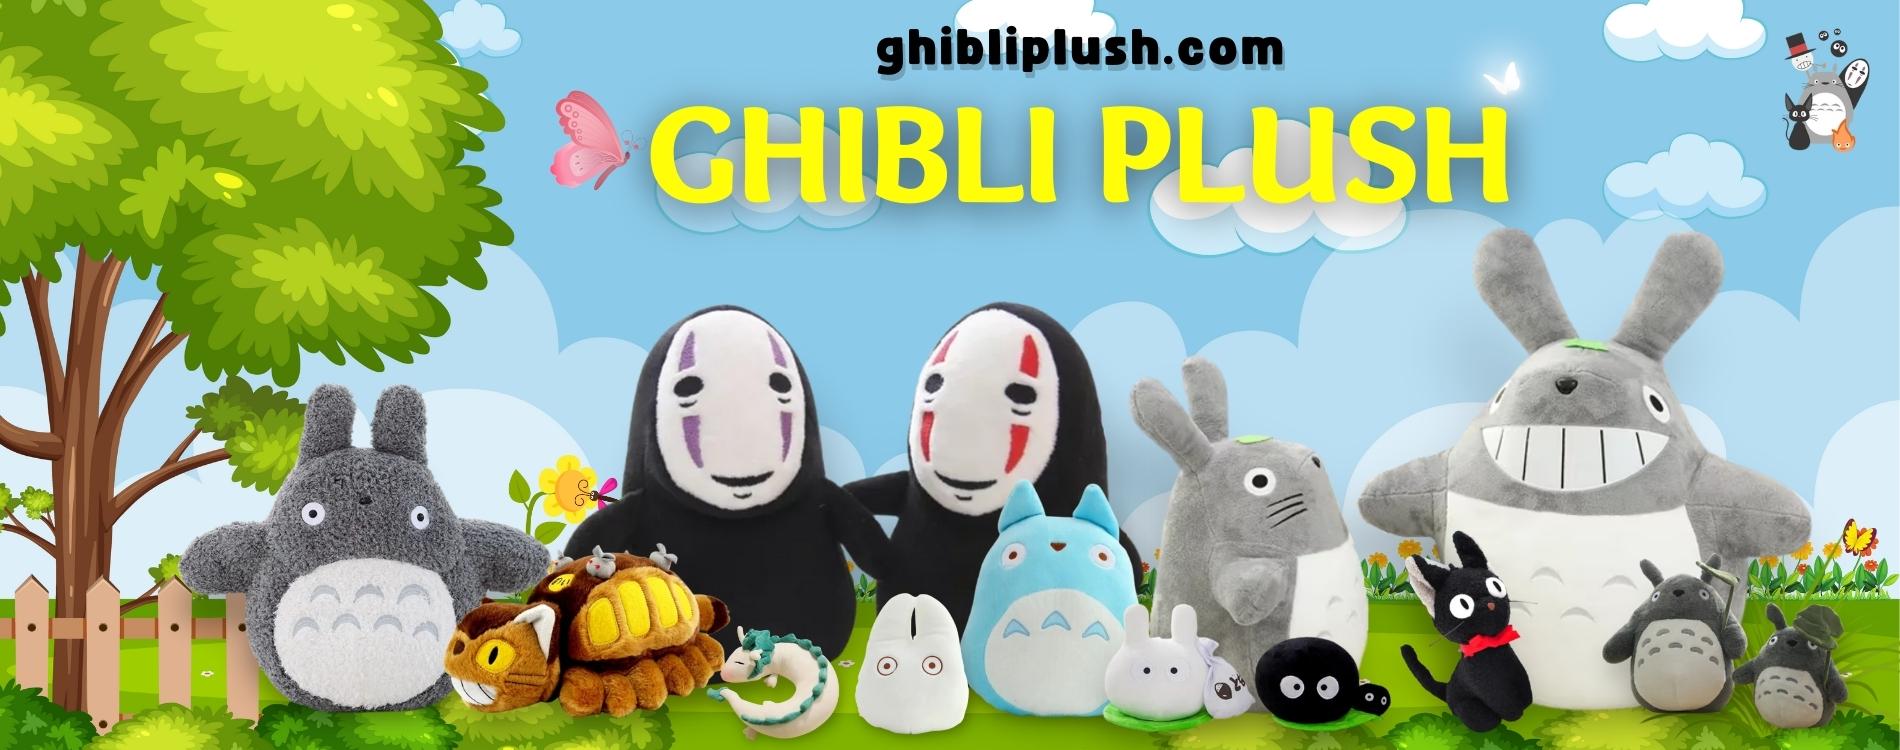 Ghibli Plush Banner